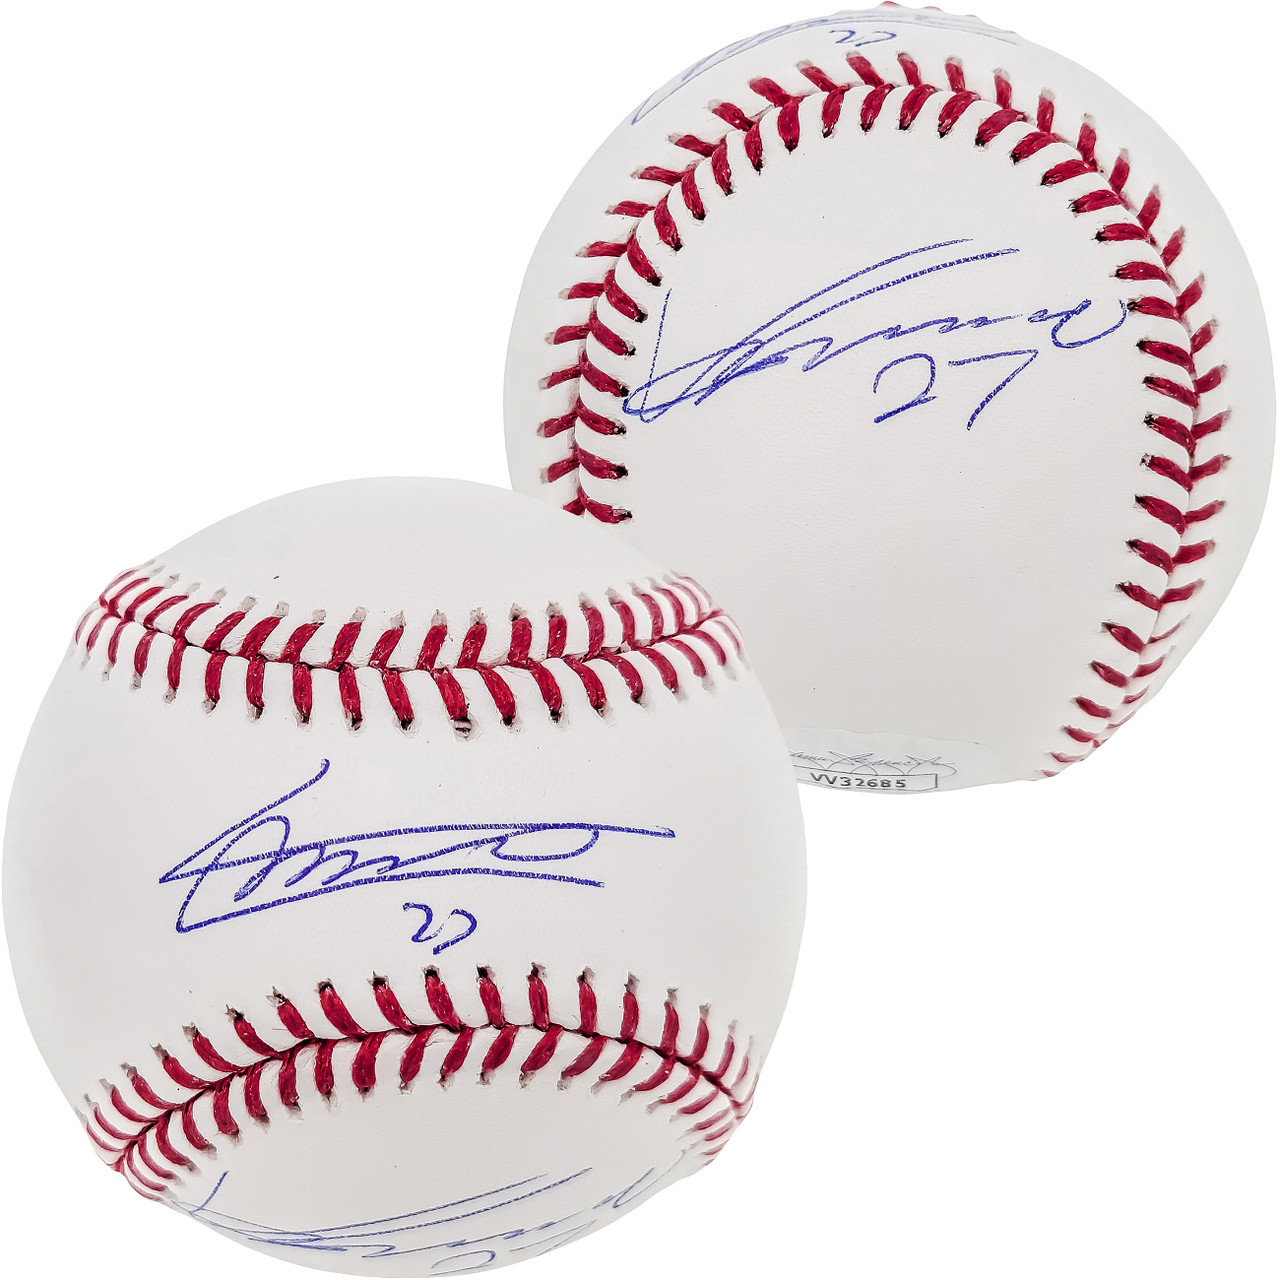 Vladimir Guerrero Jr. & Vladimir Guerrero Sr. Autographed Official MLB  Baseball JSA Stock #203456